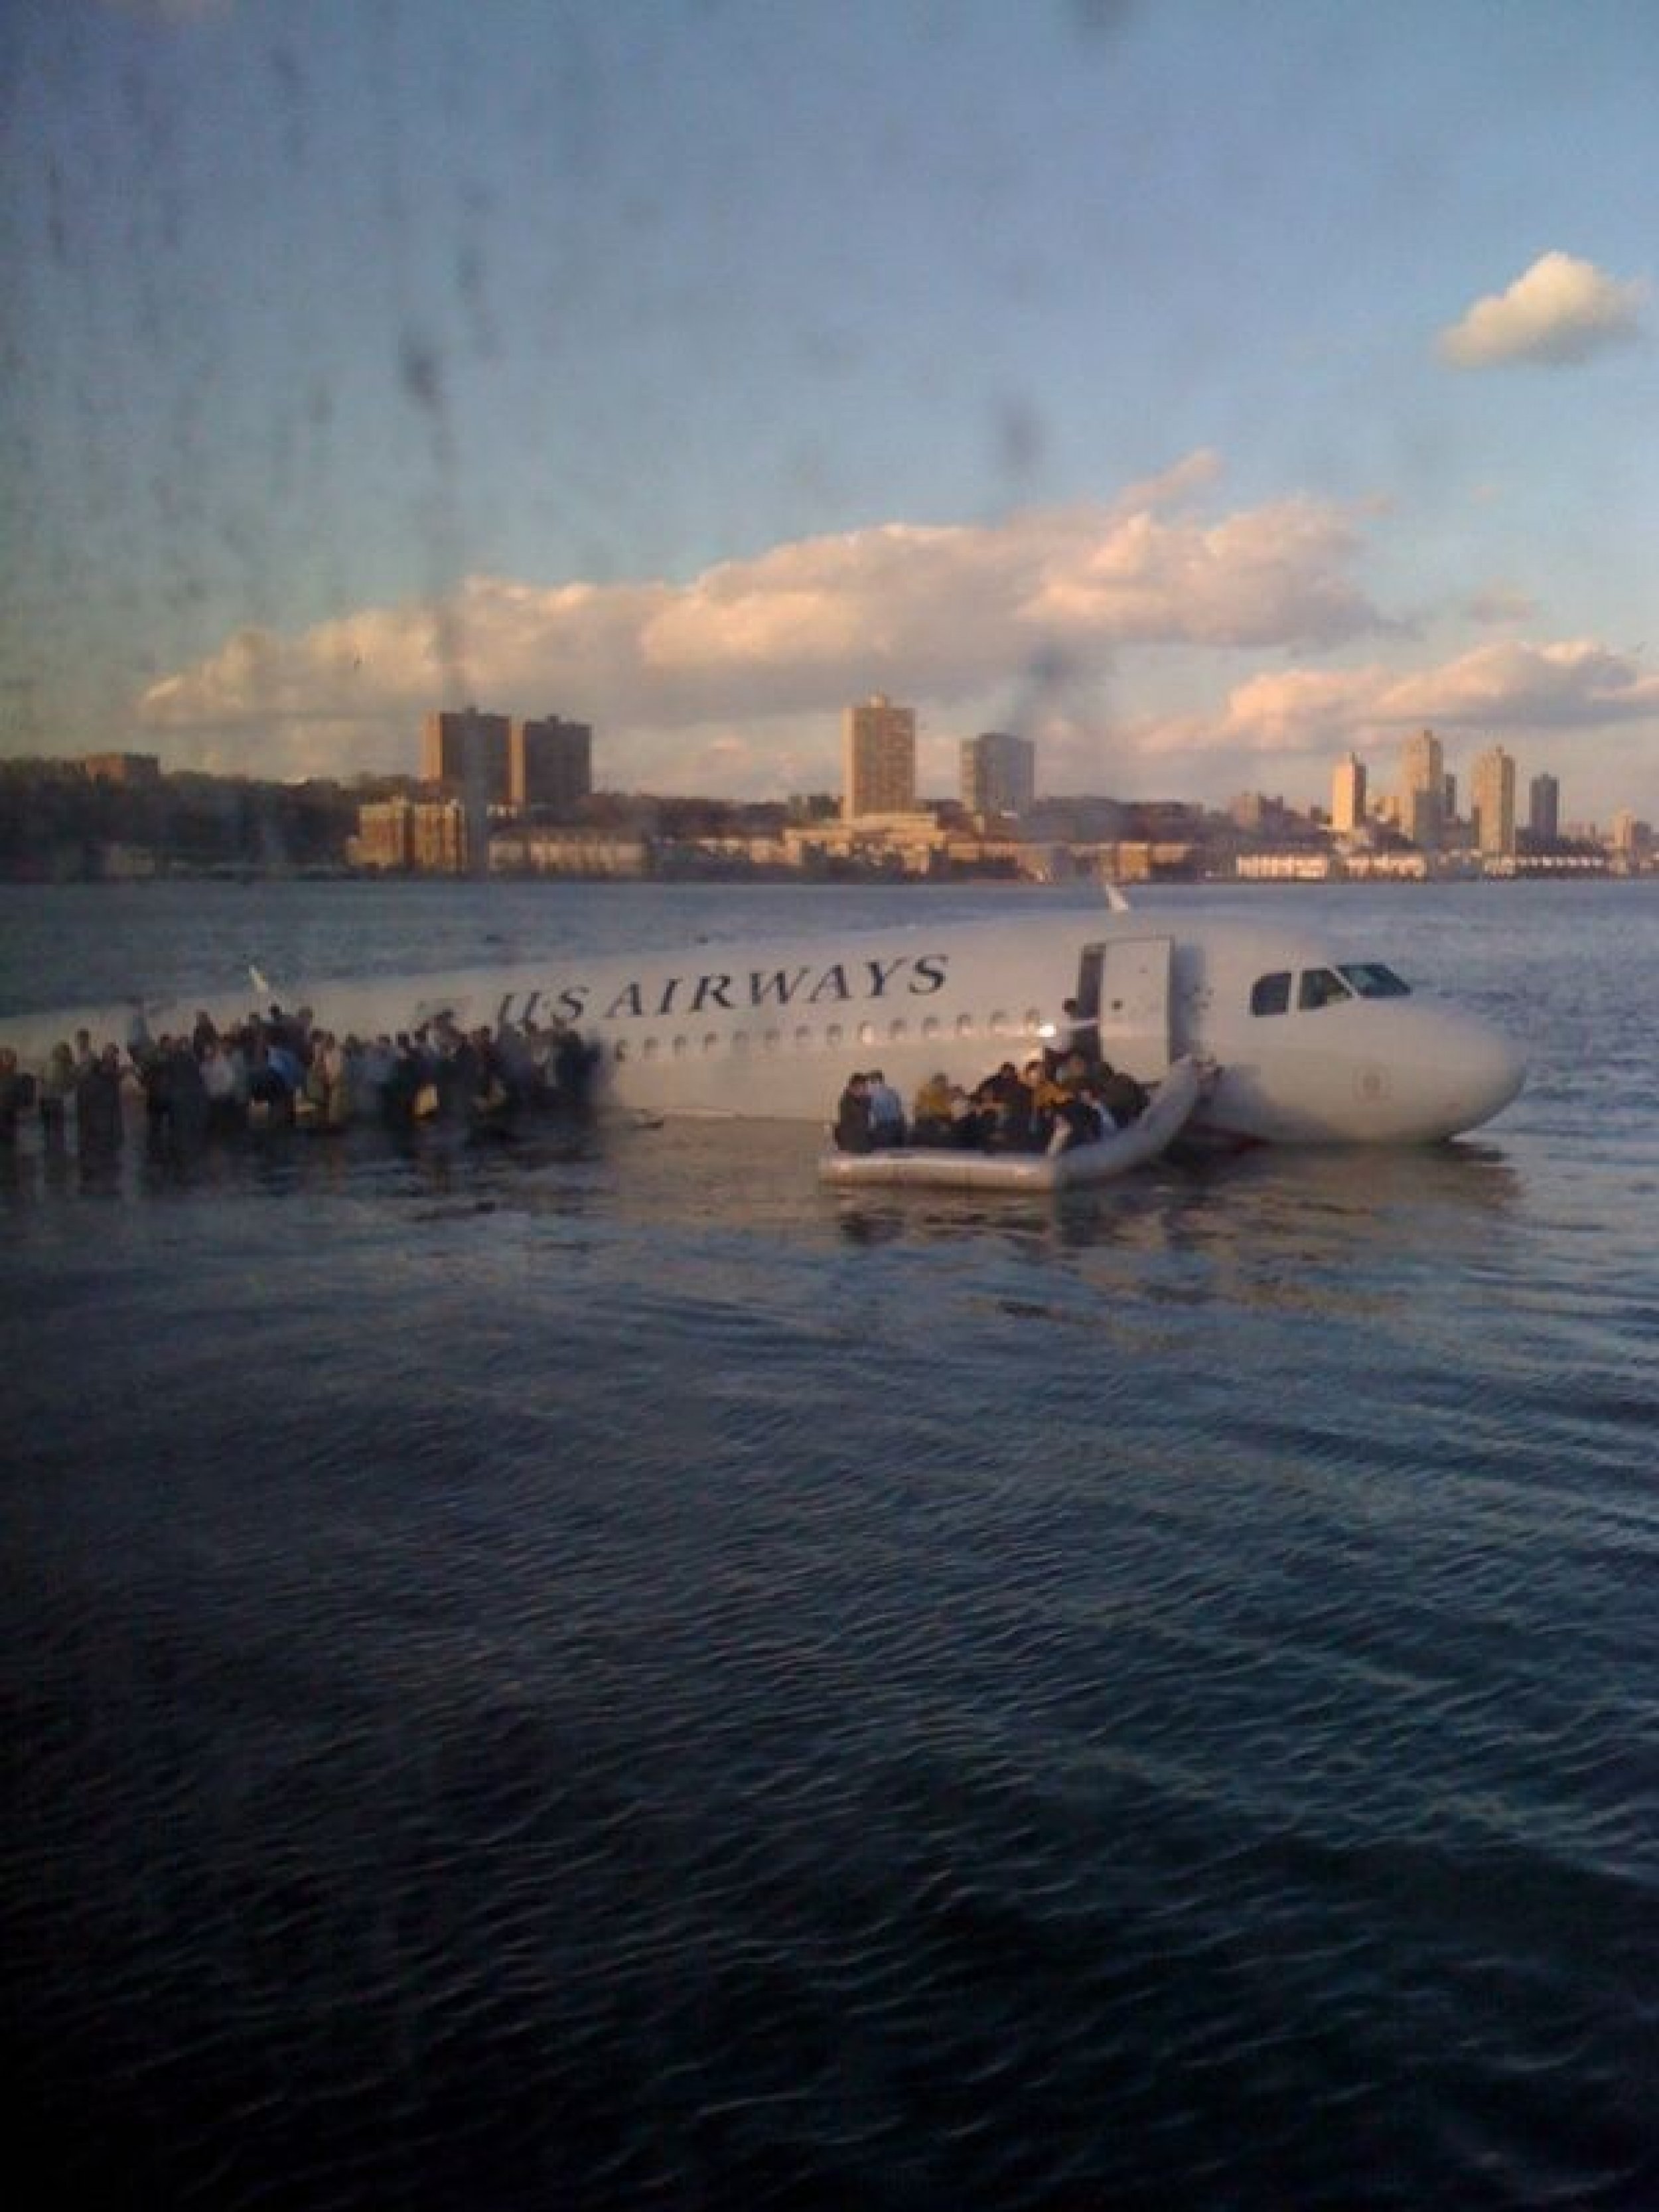 jkrums Tweets Hudson River Plane Crash